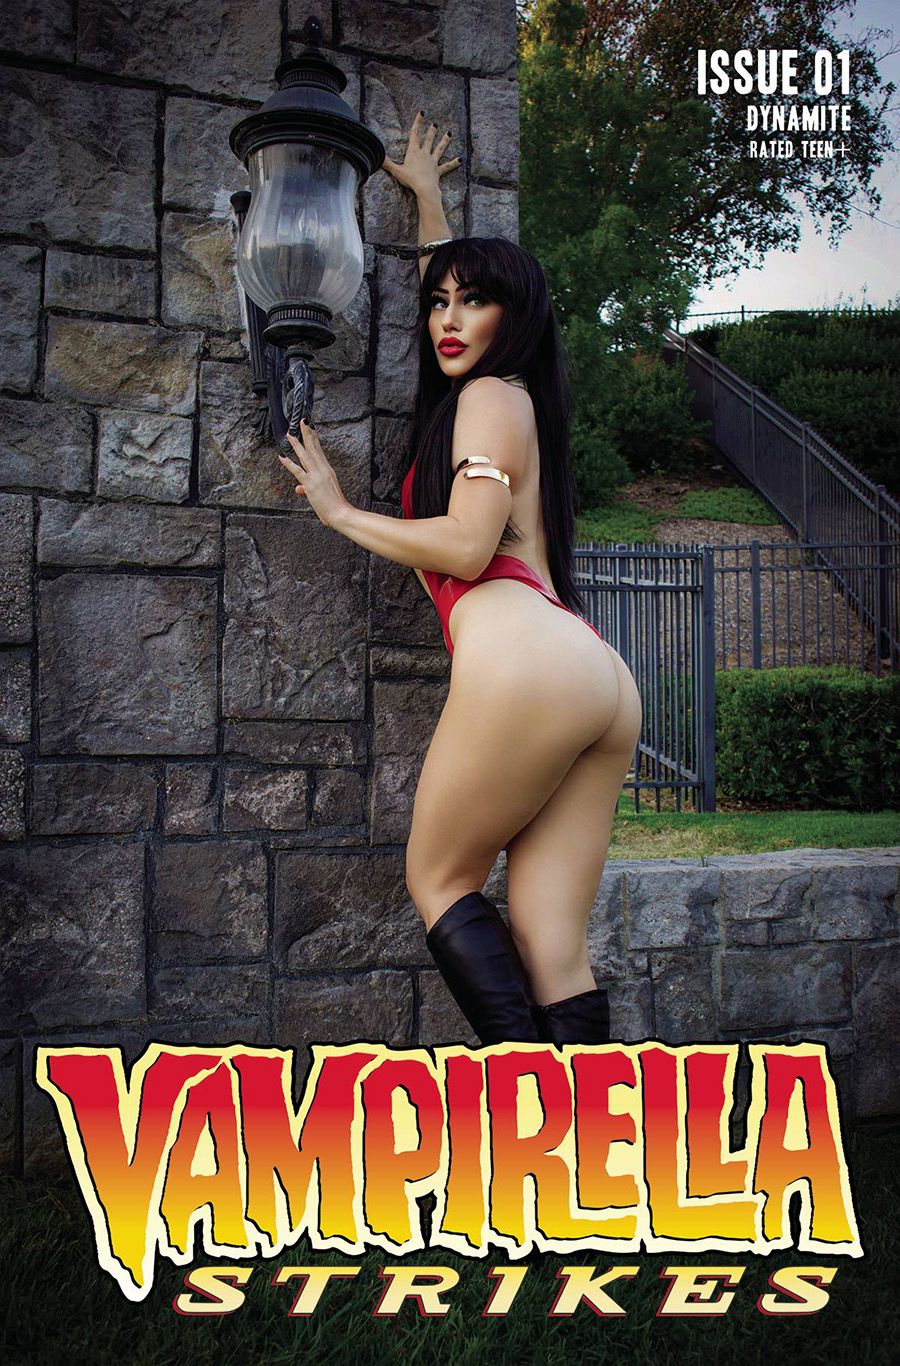 Vampirella Strikes Vol 3 #1 Cover E Variant Rachel Hollon Cosplay Photo Cover